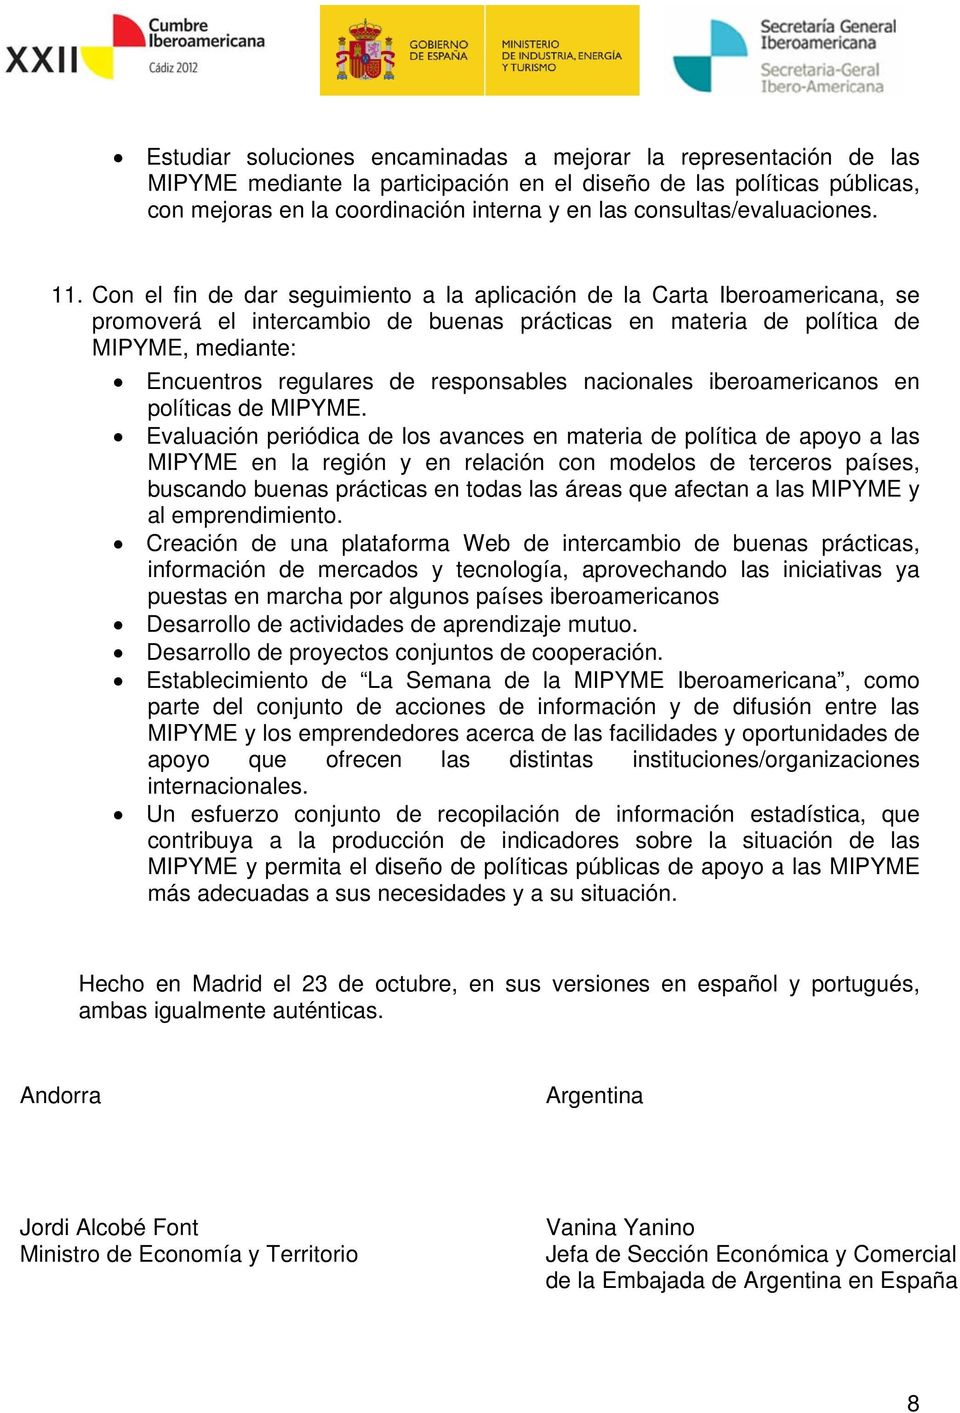 Con el fin de dar seguimiento a la aplicación de la Carta Iberoamericana, se promoverá el intercambio de buenas prácticas en materia de política de MIPYME, mediante: Encuentros regulares de